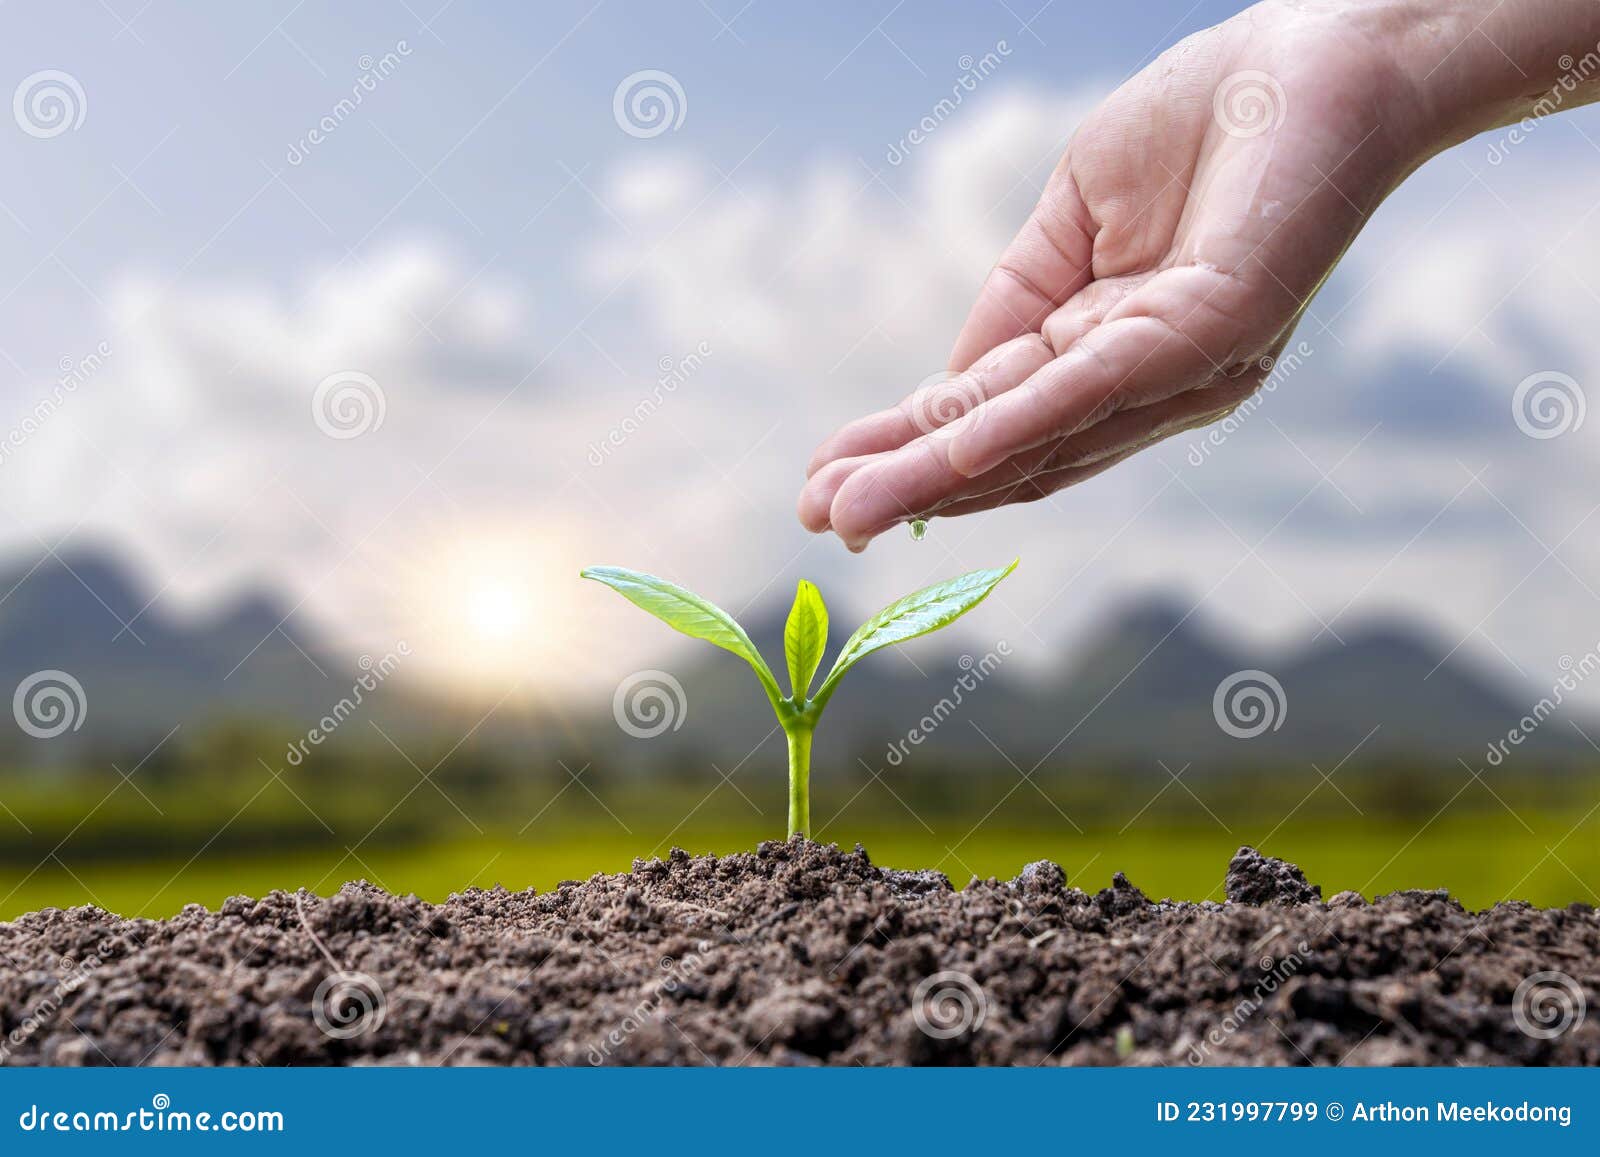 croissance des plantes ou germination des graines et mains